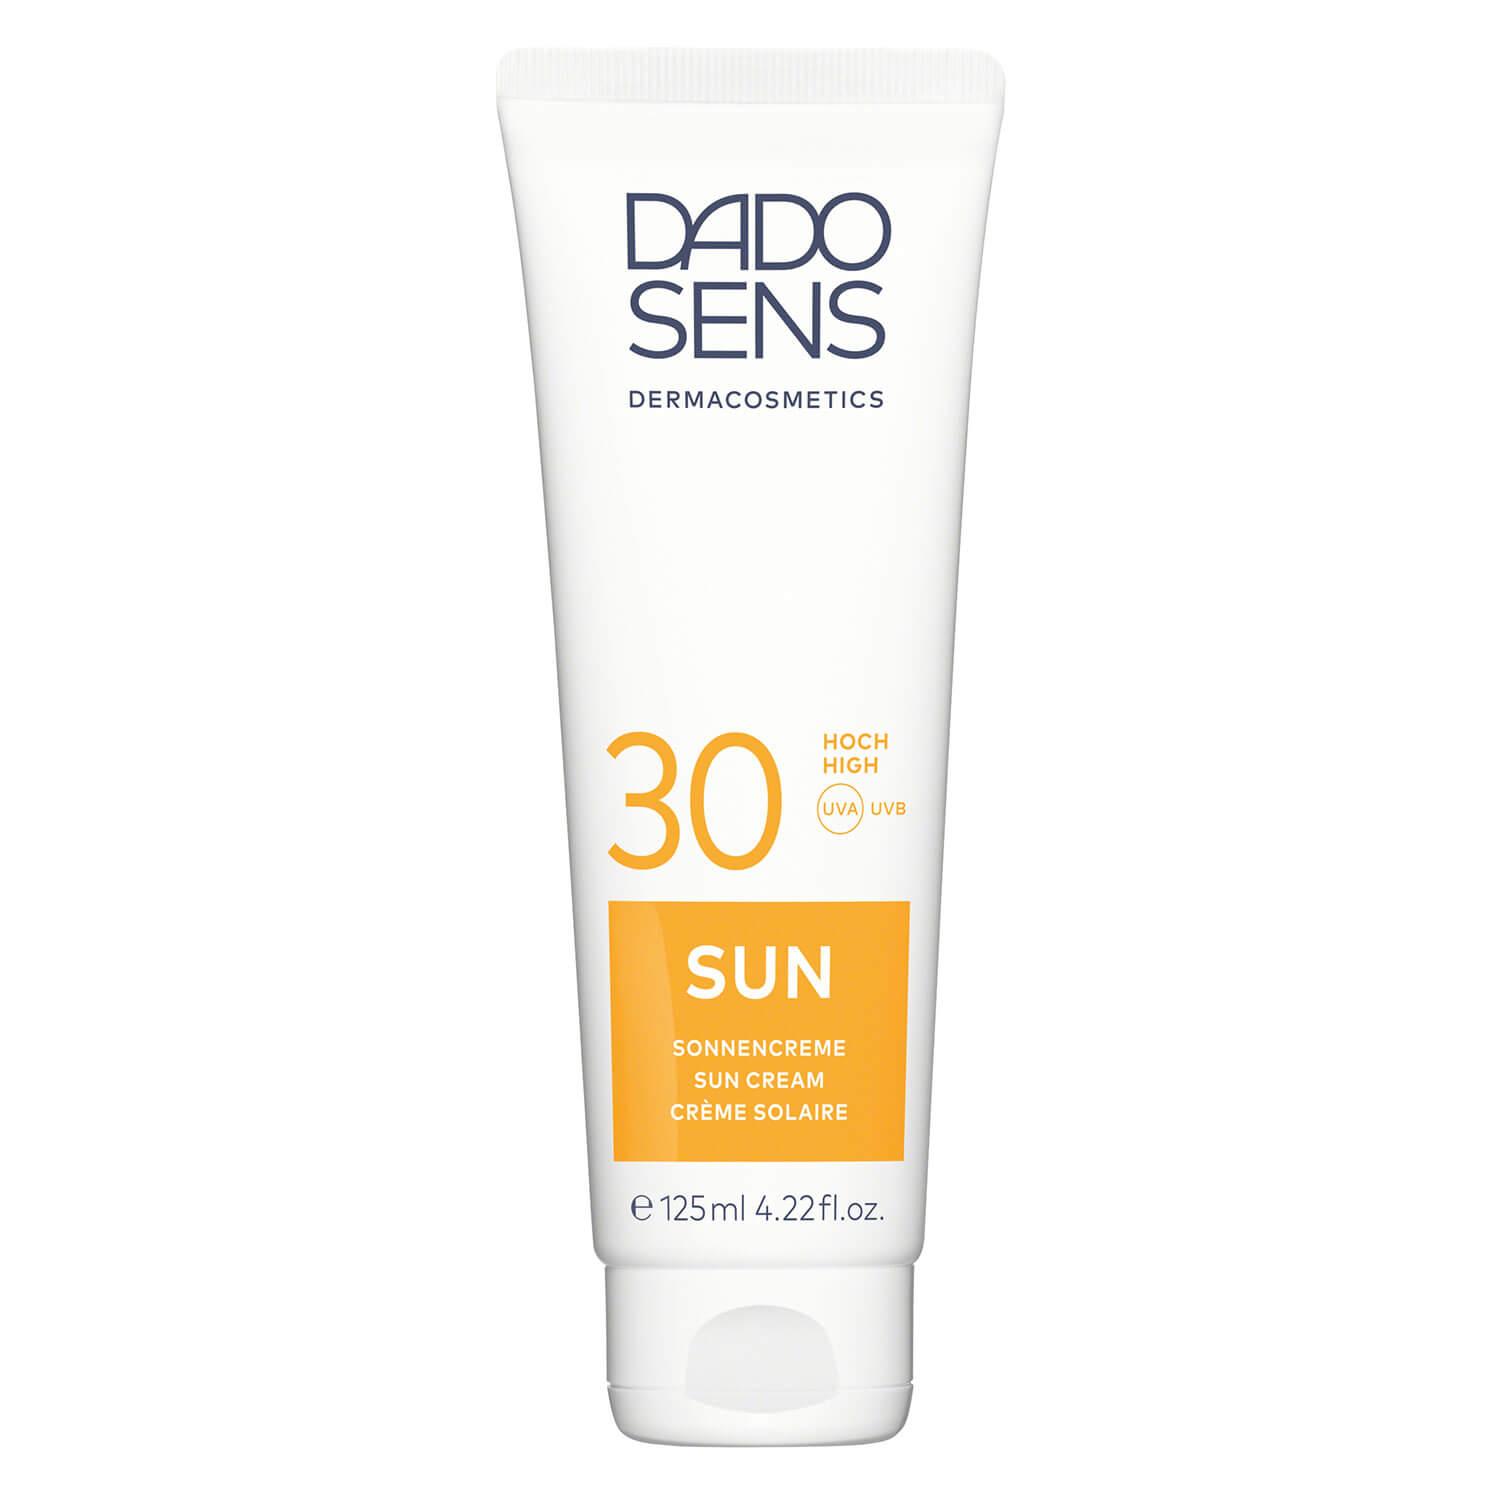 DADO SENS SUN - Sonnen-Creme SPF 30